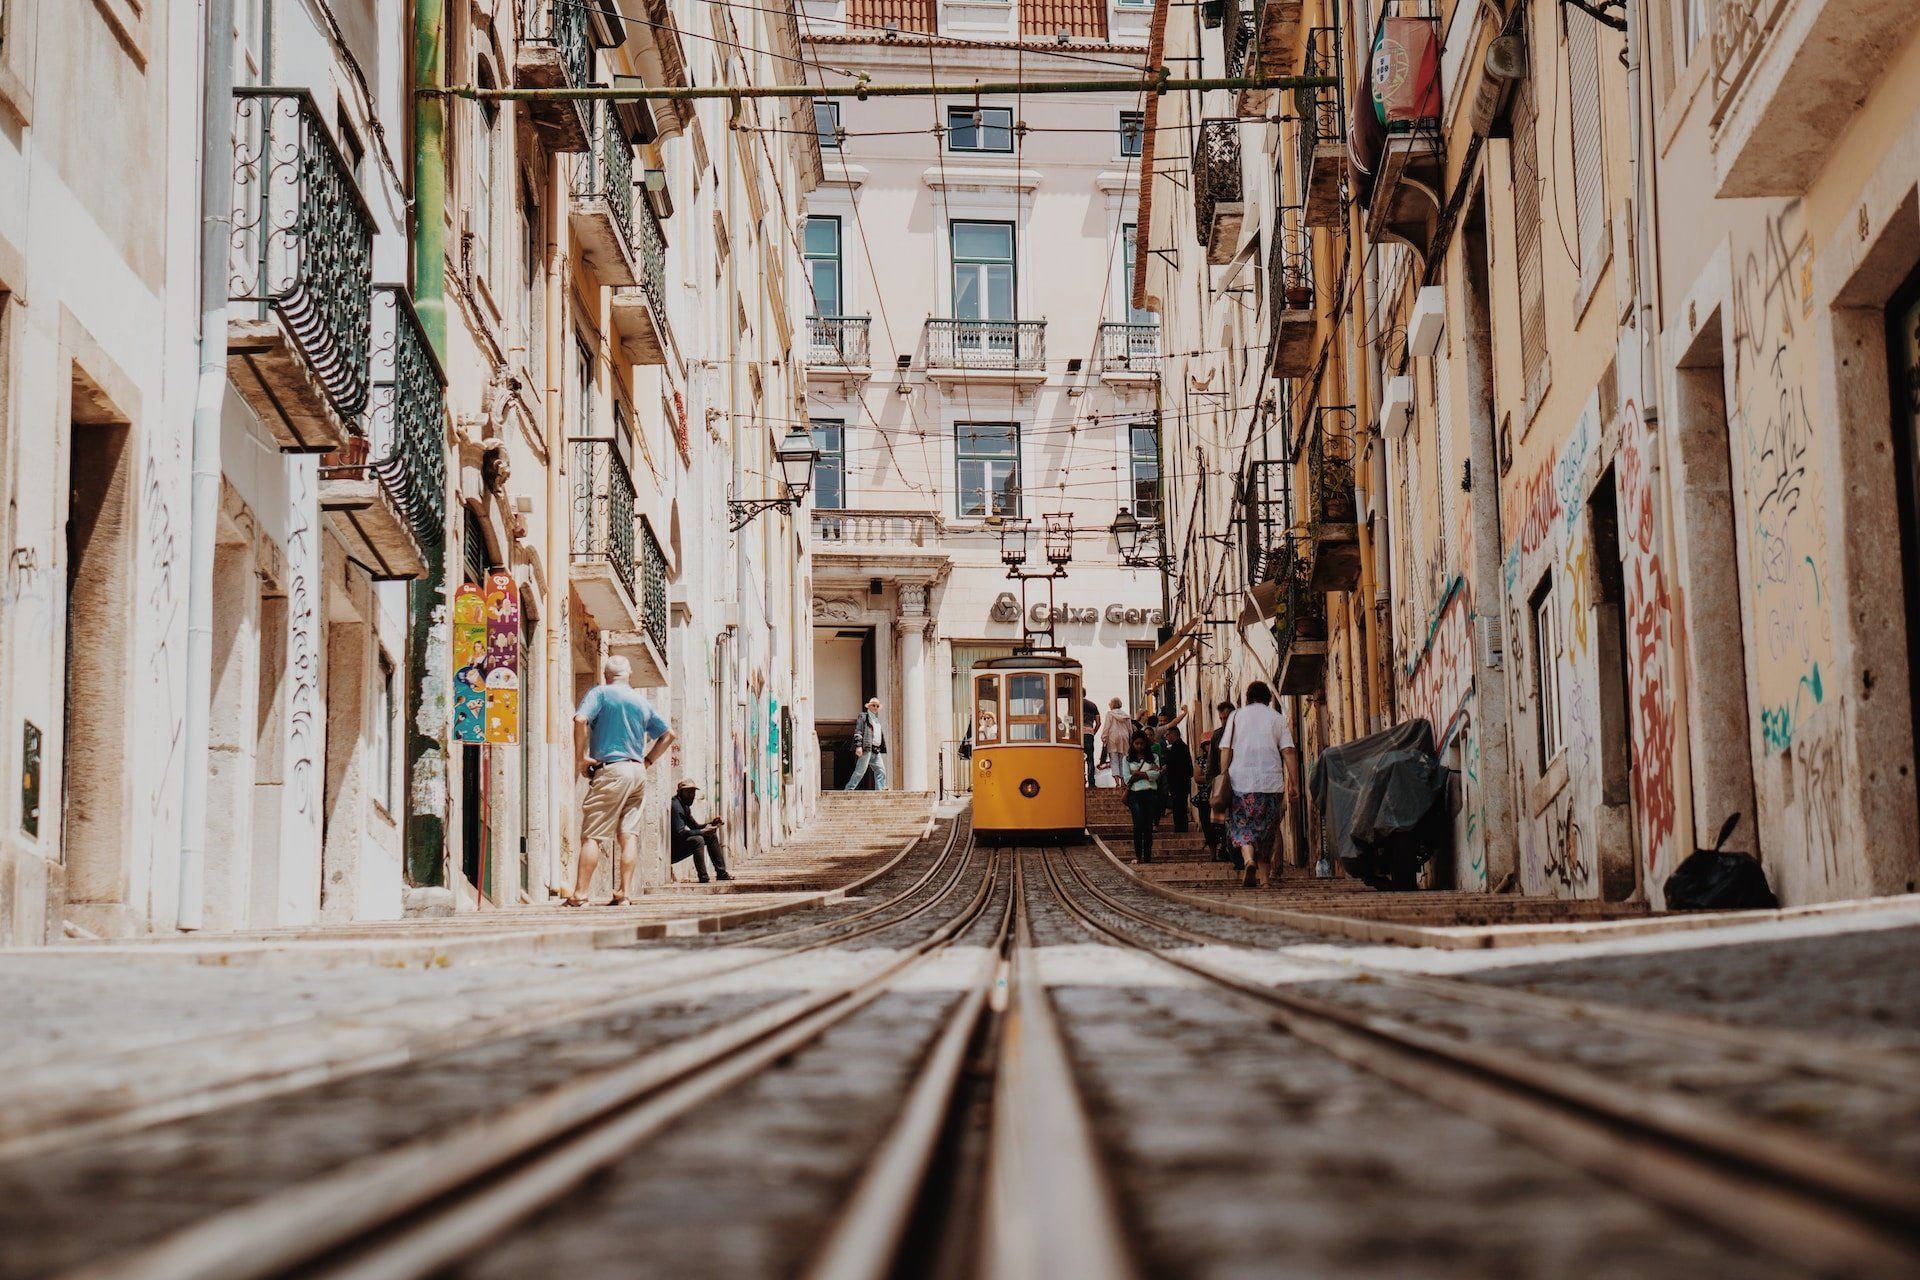 Straat met tram in Lissabon